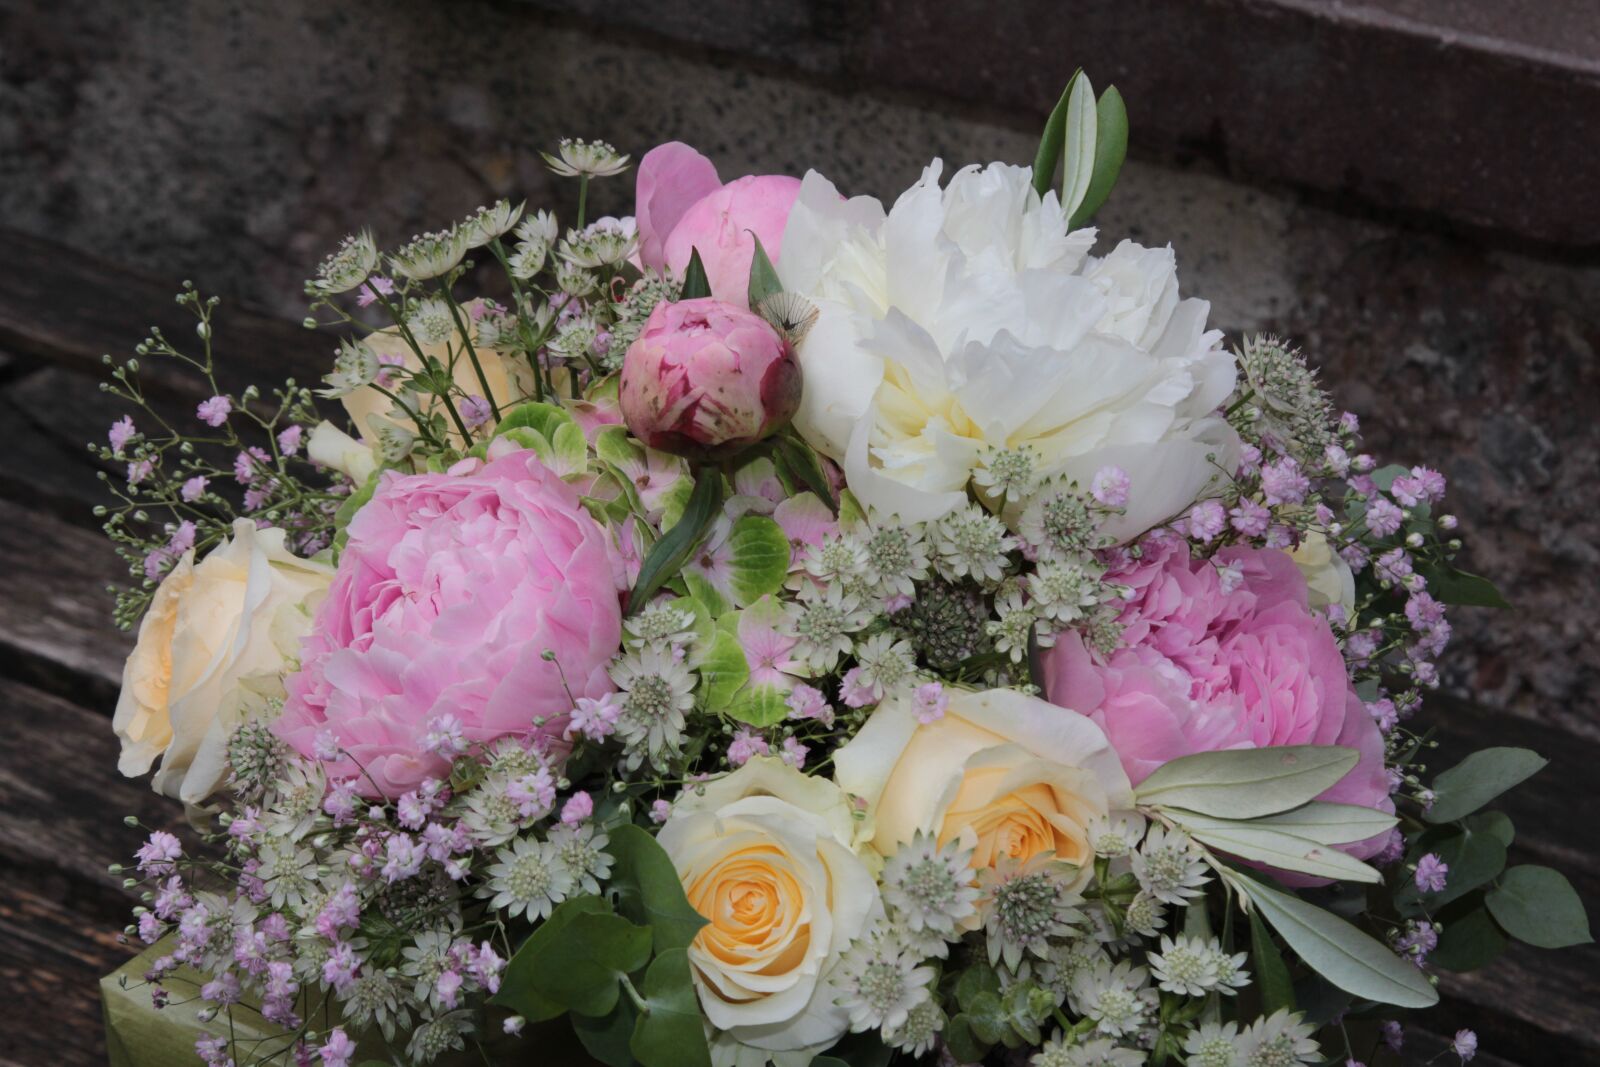 Canon EF 24-105mm F4L IS USM sample photo. Flower, bouquet, floral arrangement photography